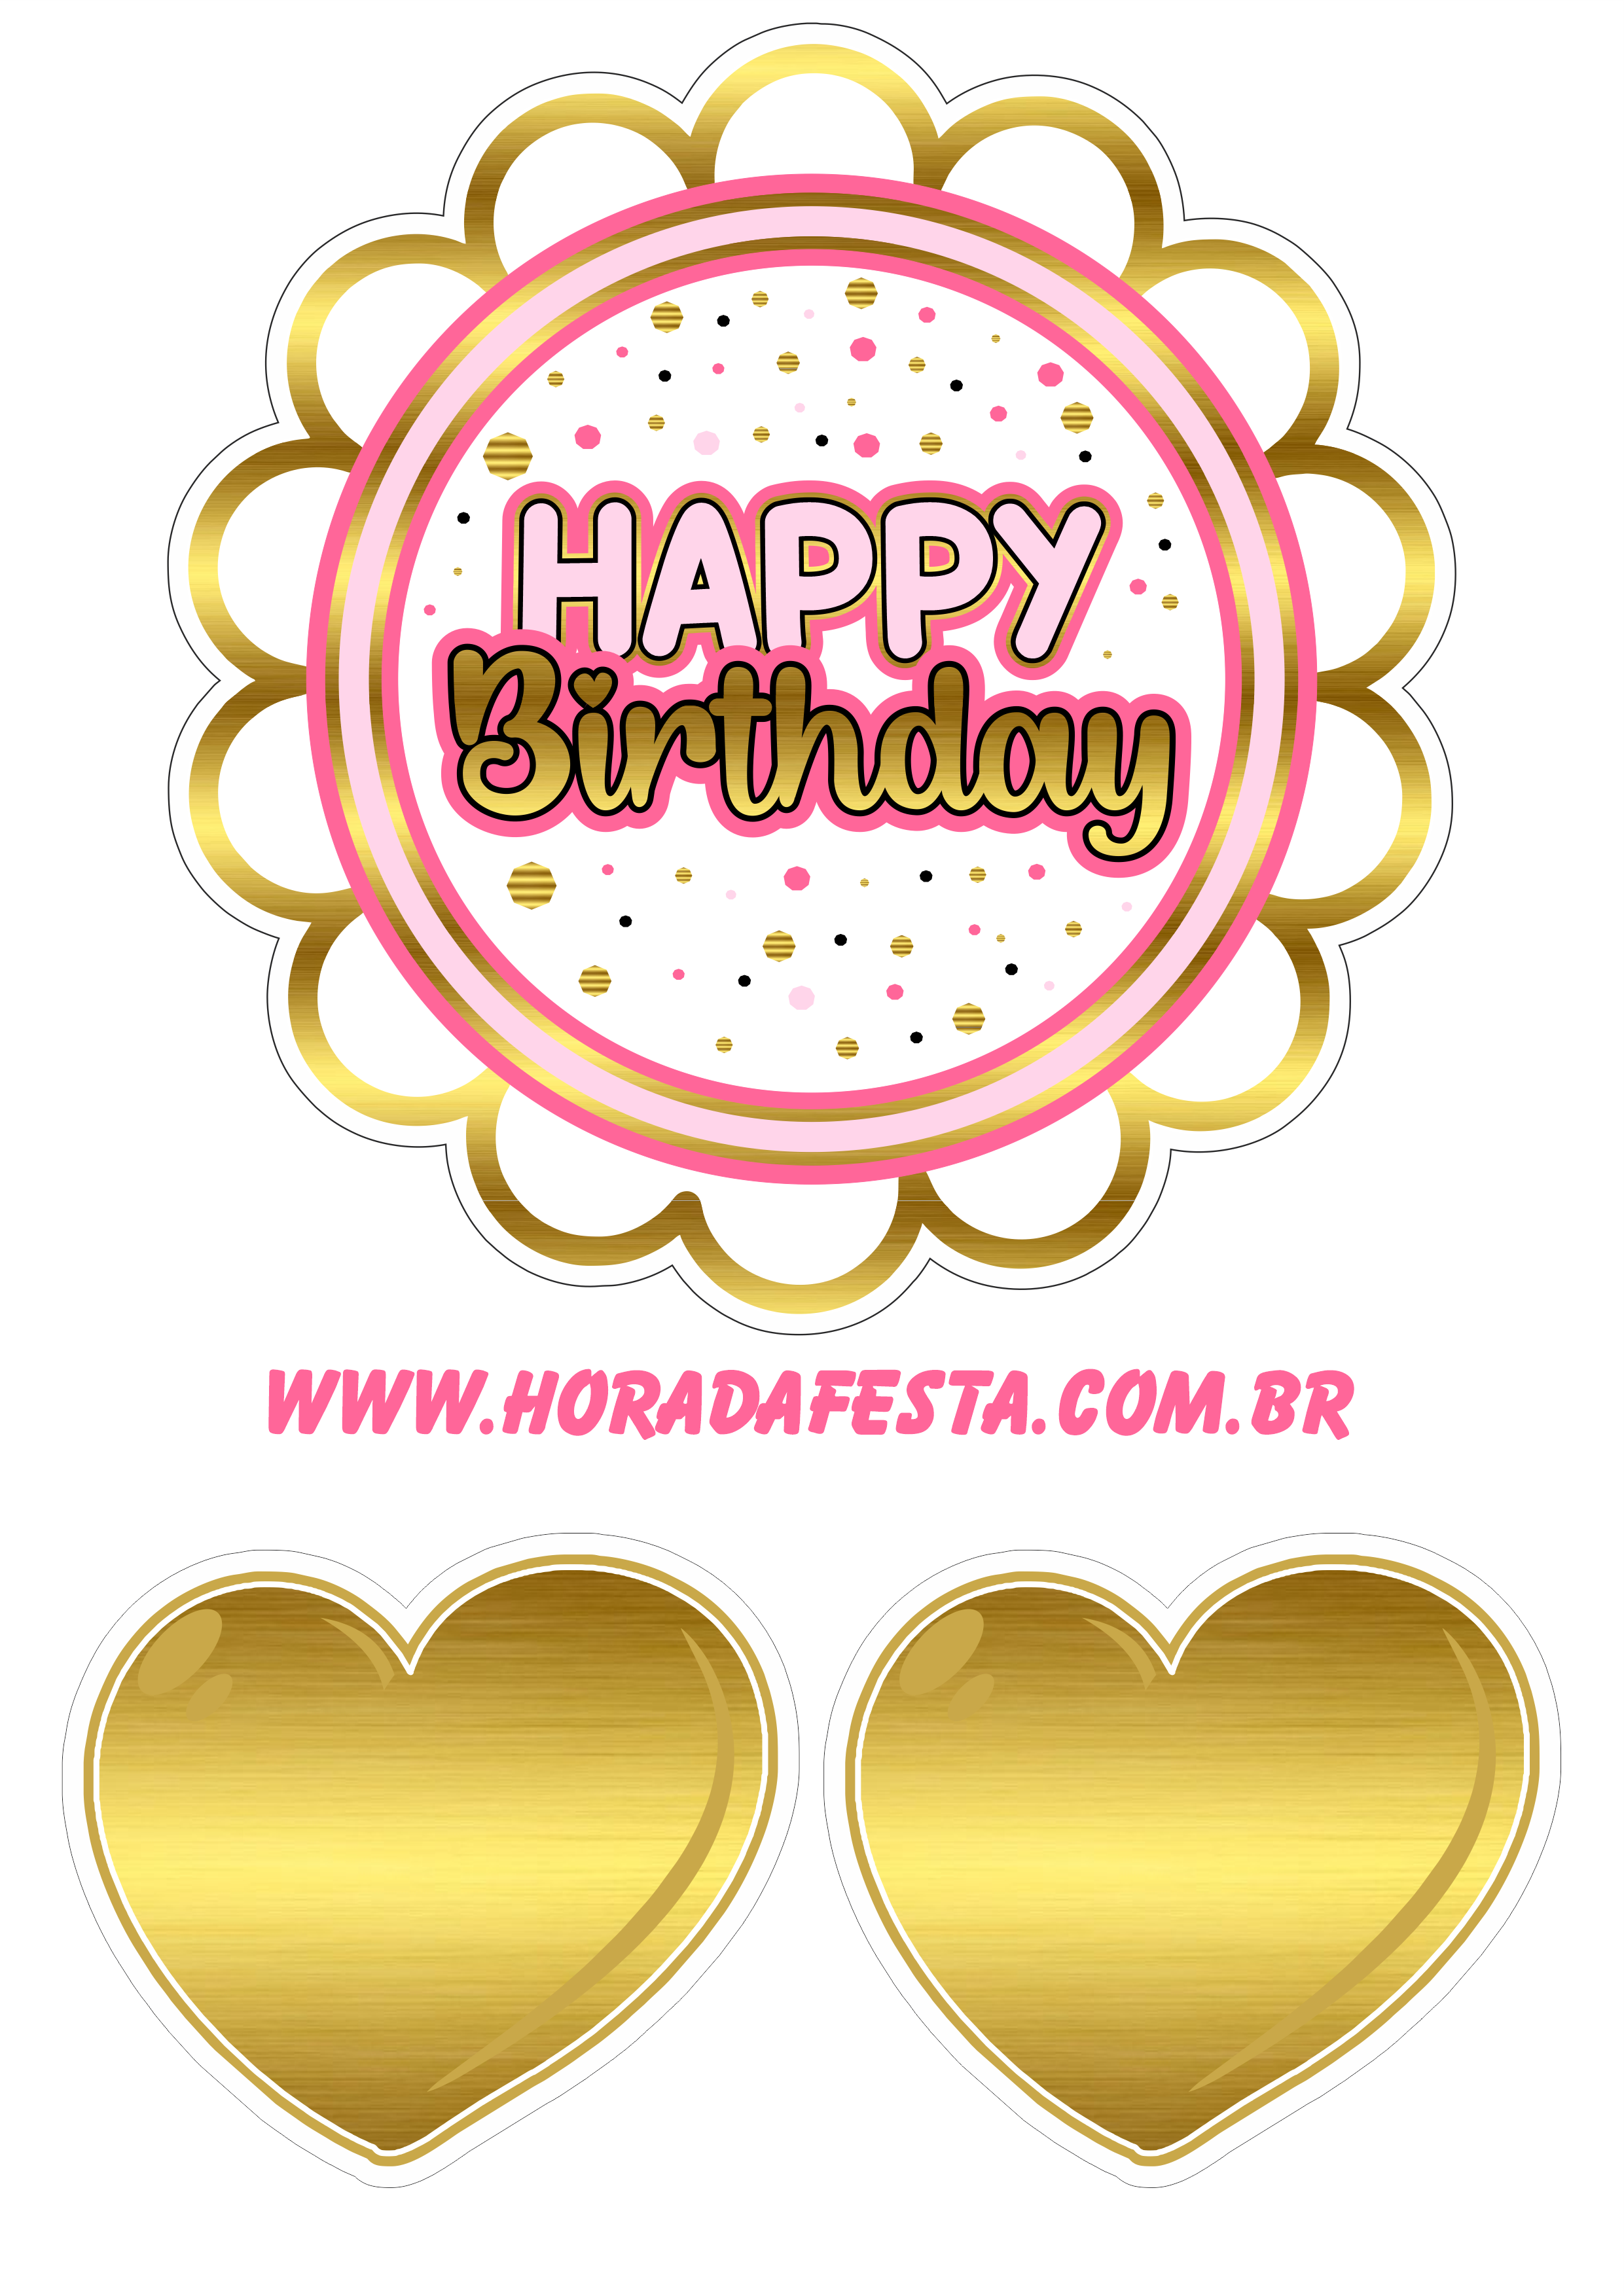 Happy birthday topo de bolo de aniversário dourado com rosa corações fazendo a nossa festa artes gráficas design grátis png